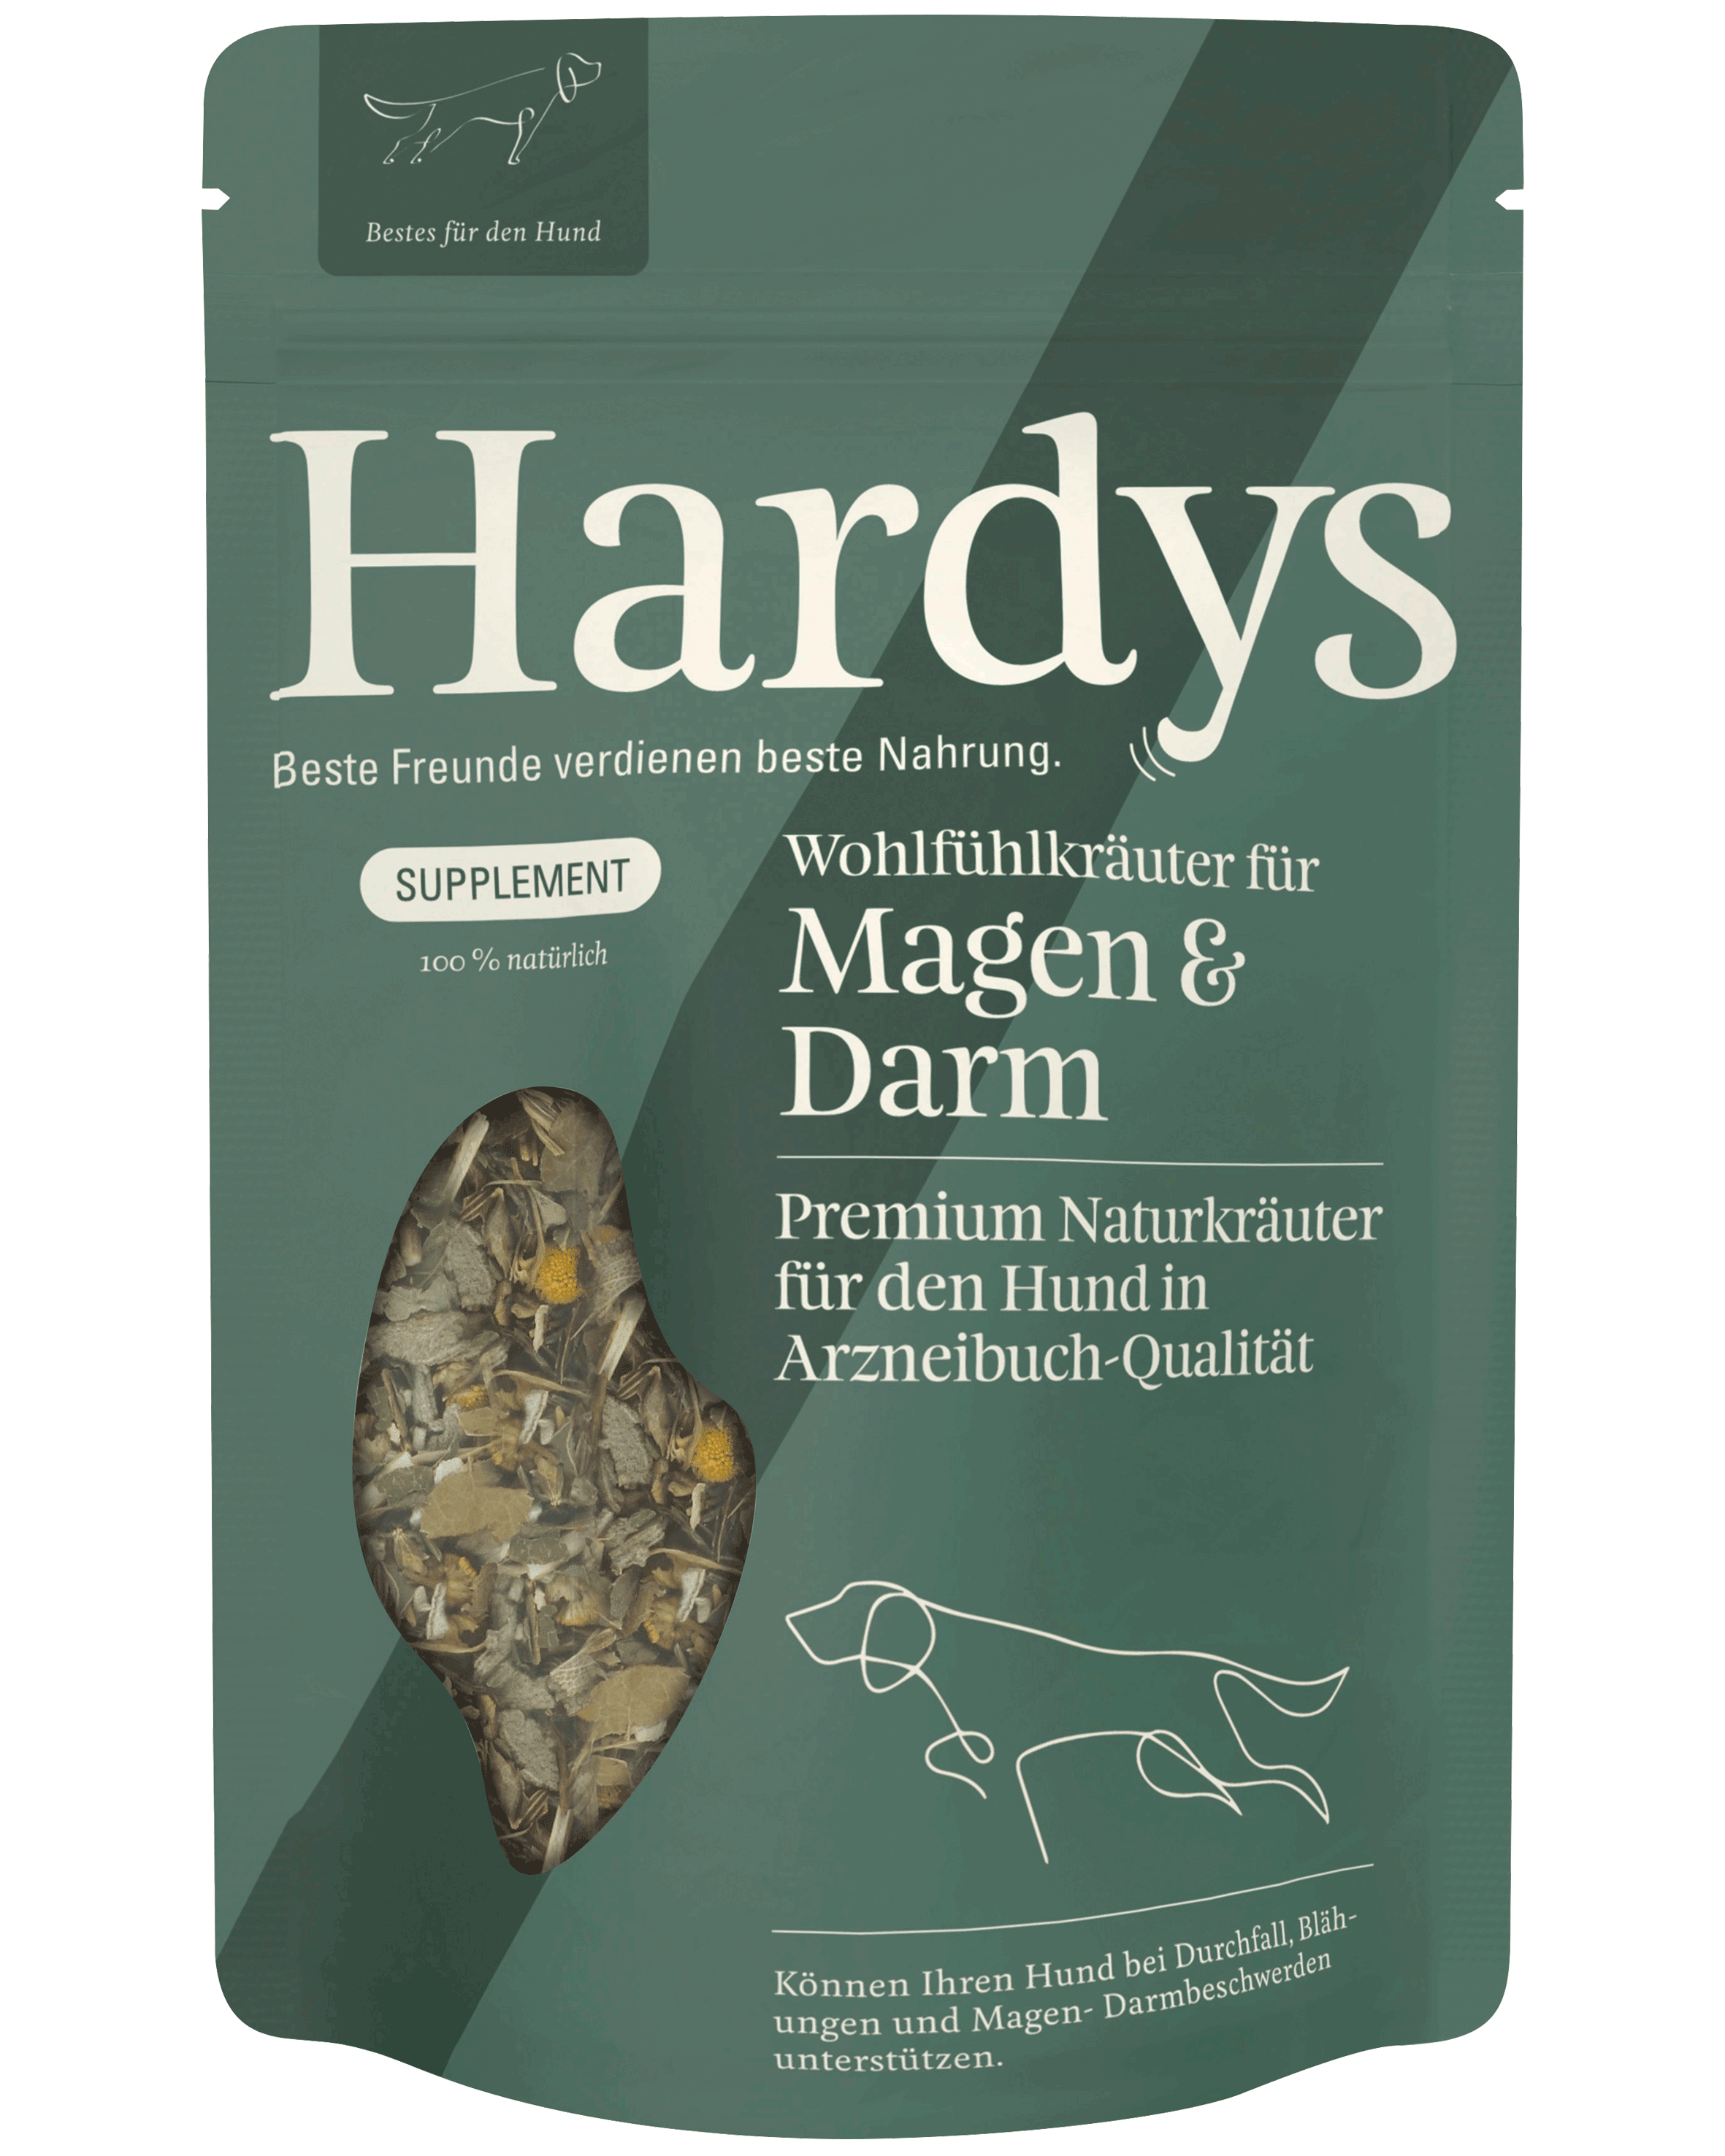 Hardys Supplement Kräuter für Magen & Darm, 45 g